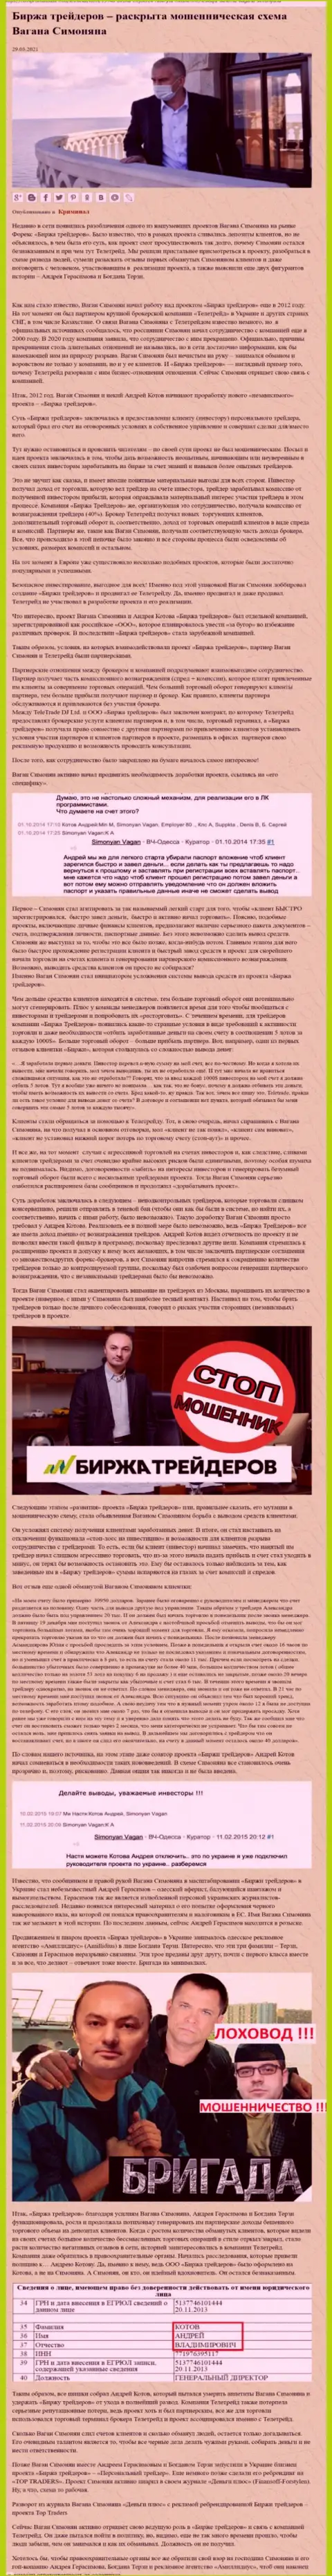 Пиаром организации Биржа Трейдеров, связанной с мошенниками TeleTrade, также занимался Богдан Терзи